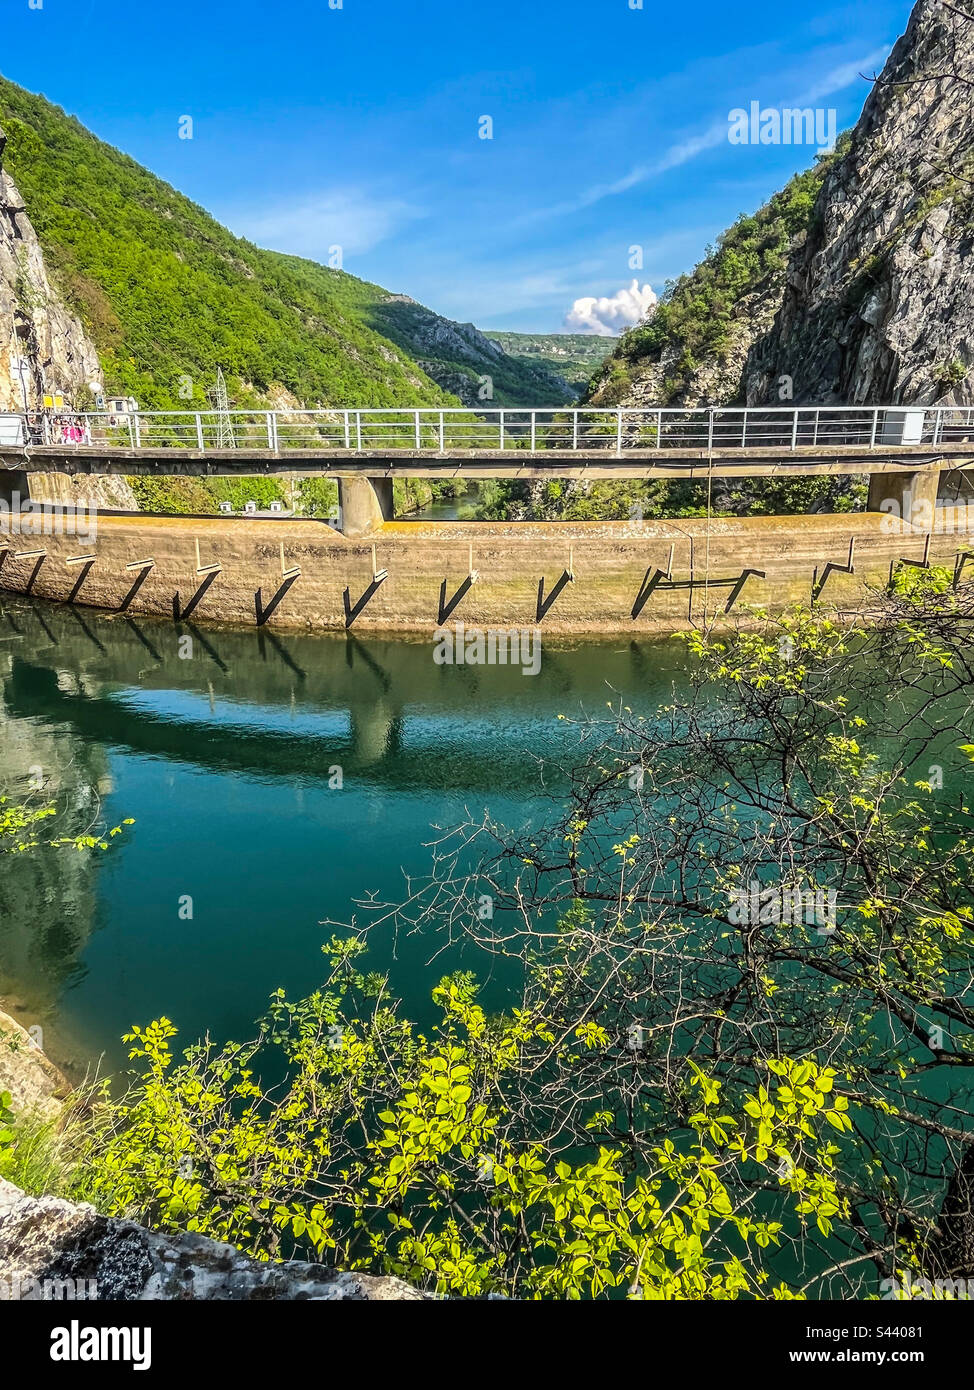 Wasserbarriere in Mazedonien, Matka Canyon. Berge, Bäume, smaragdfarbenes Wasser des Treska-Flusses. Atemberaubende Natur auf den balkanen. Stockfoto